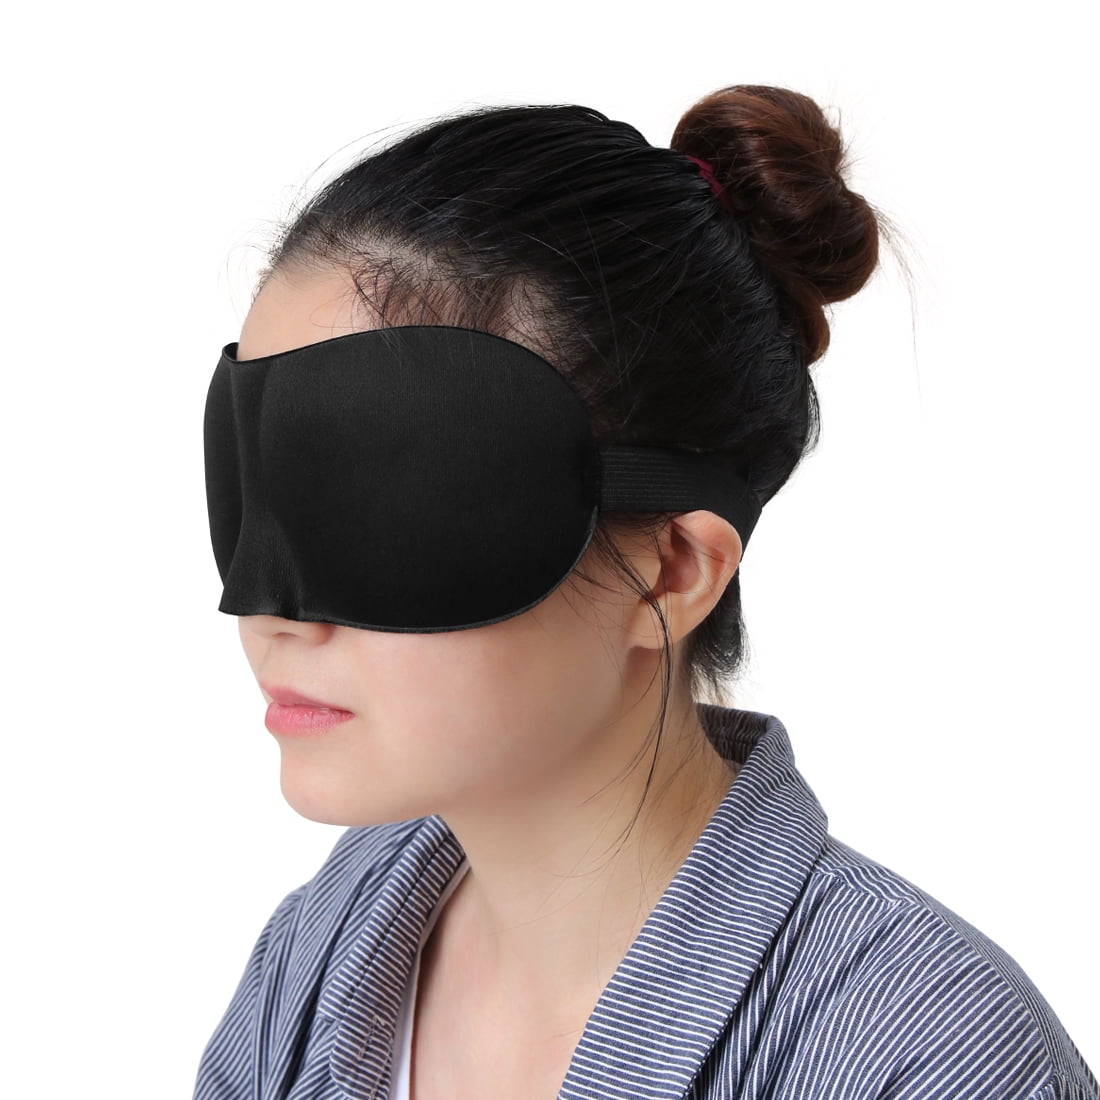 3D Soft Padded Travel Eye Mask Rest Sleep Cover Sleeping Blindfold Black New